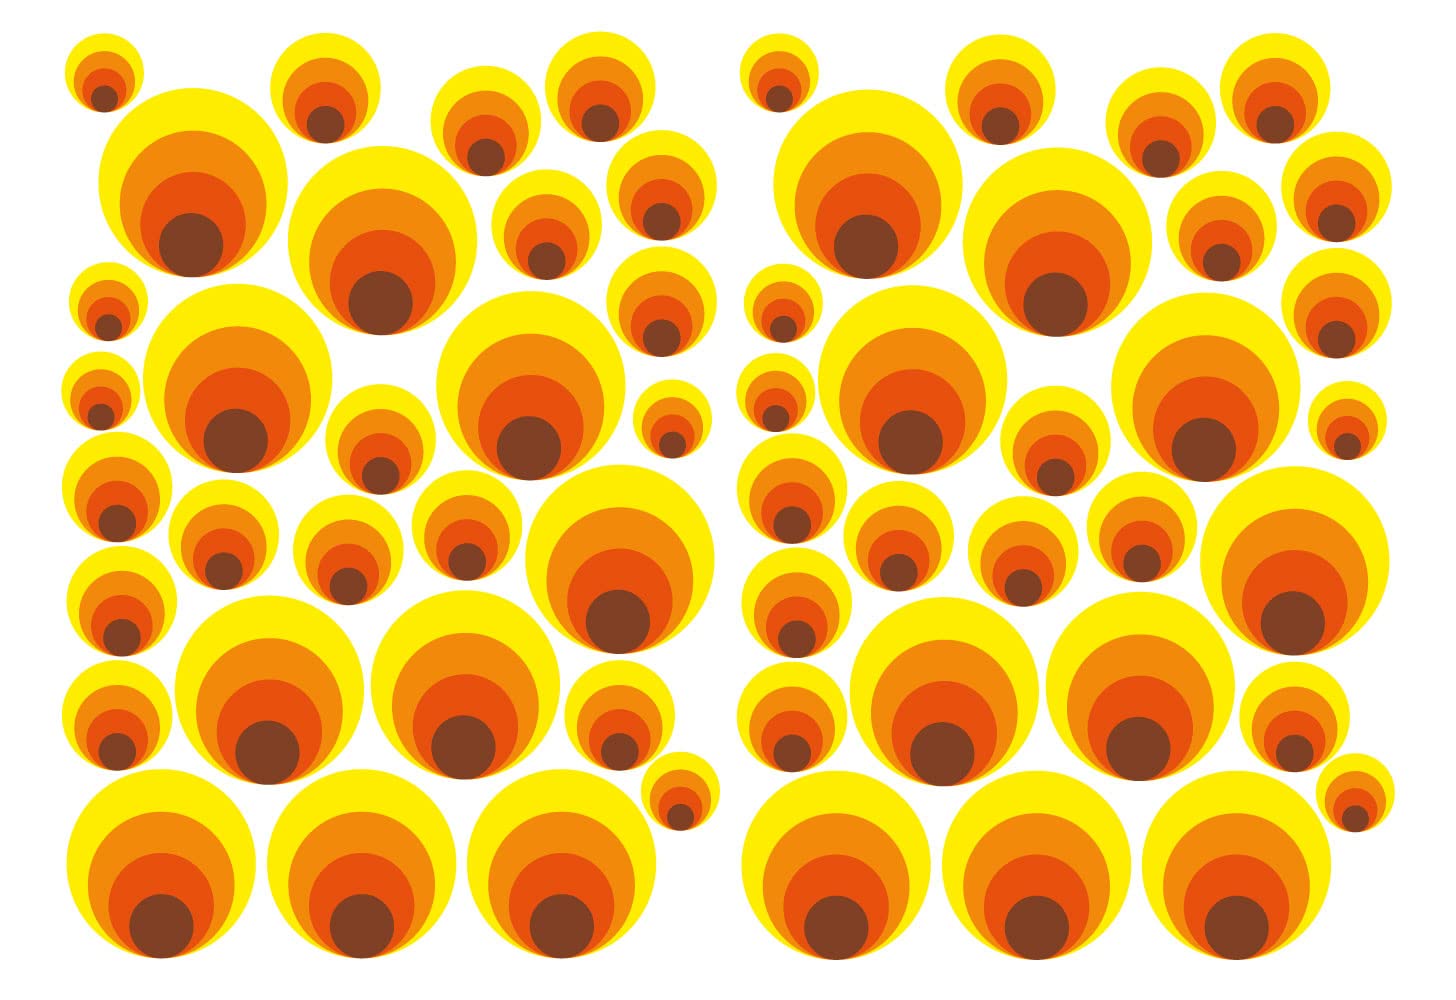 Schilderkröten 58 Retro Aufkleber Kreise Bubble Sticker selbstklebend Dekor für Auto Fahrrad Bus Wände Möbel Retro Style 70er Jahre Kult Muster, gelb, orange, braun glänzend matt (matt) von Schilderkröten